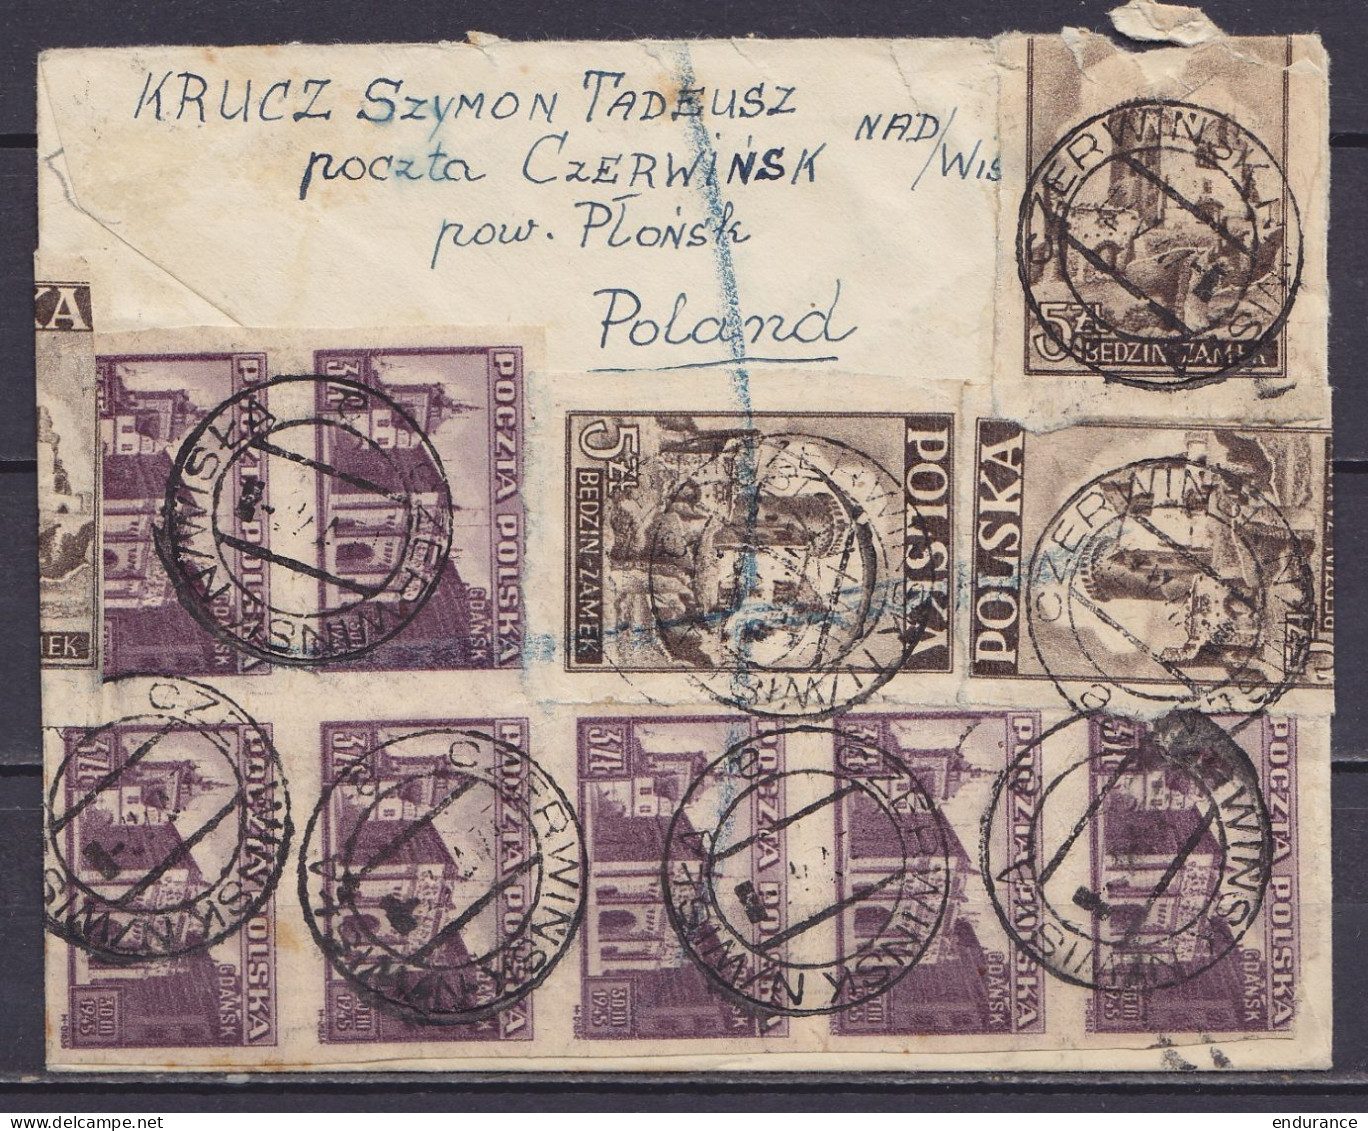 Pologne - L. Recommandée Affr. 46zt Càpt CZERWINSK N / WISKA /12 V 1947 Pour The Post Office Savings Bank à LONDON - Covers & Documents